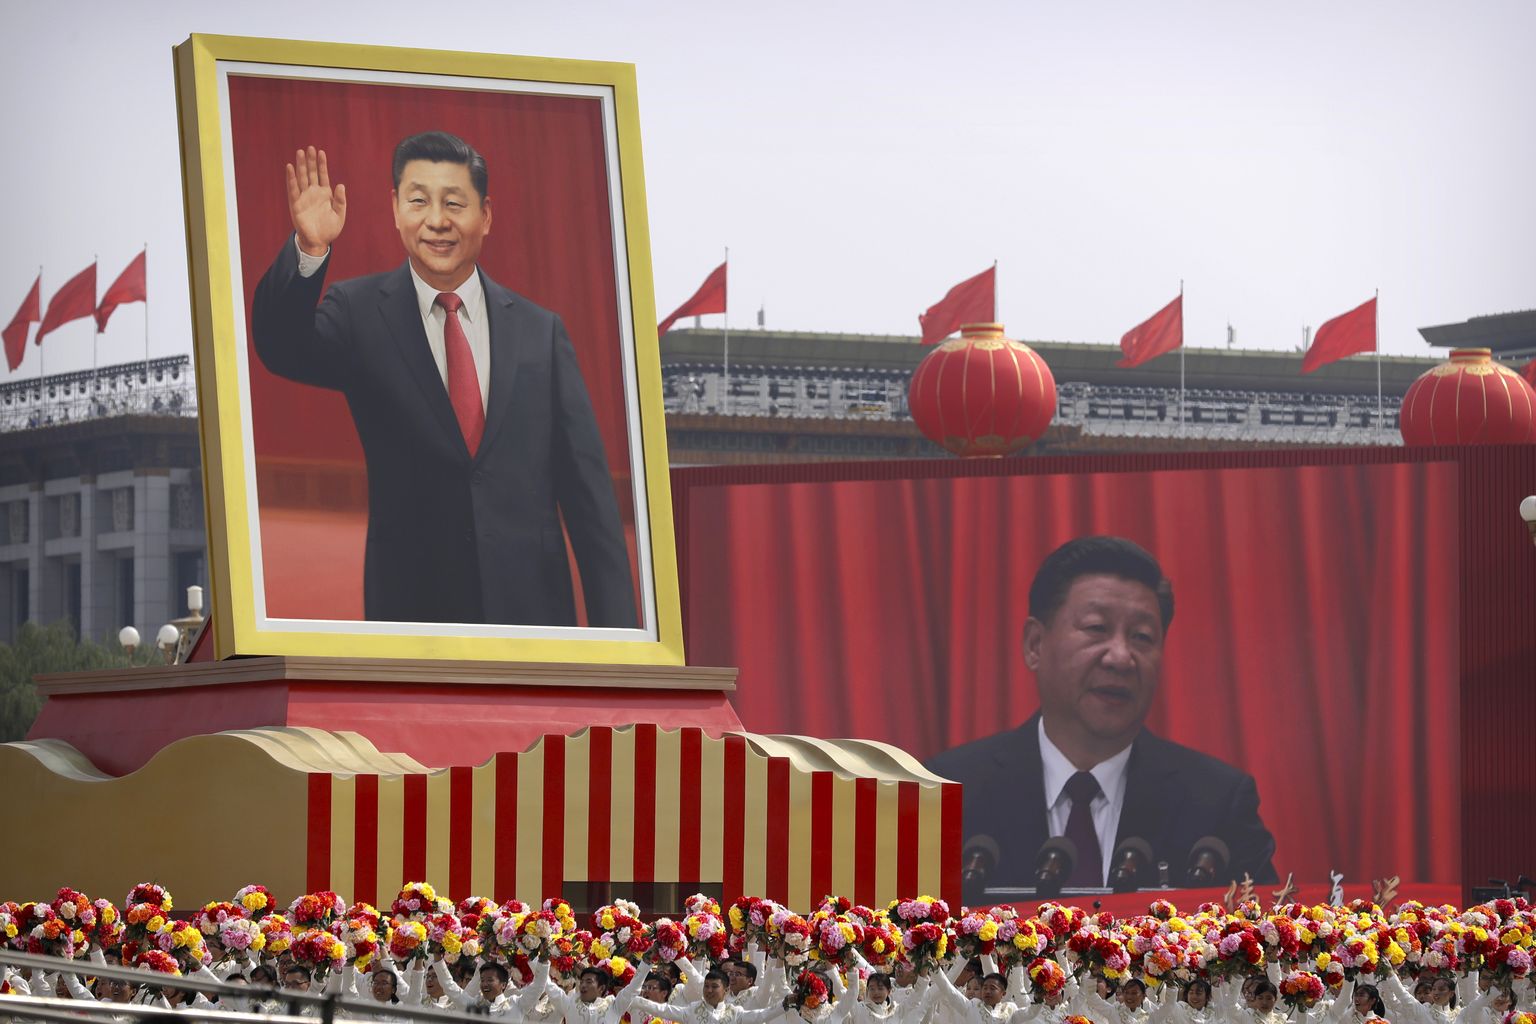 Kommunistliku Hiina 70. sünnipäeva tähistamine Pekingis 1. oktoobril 2019.